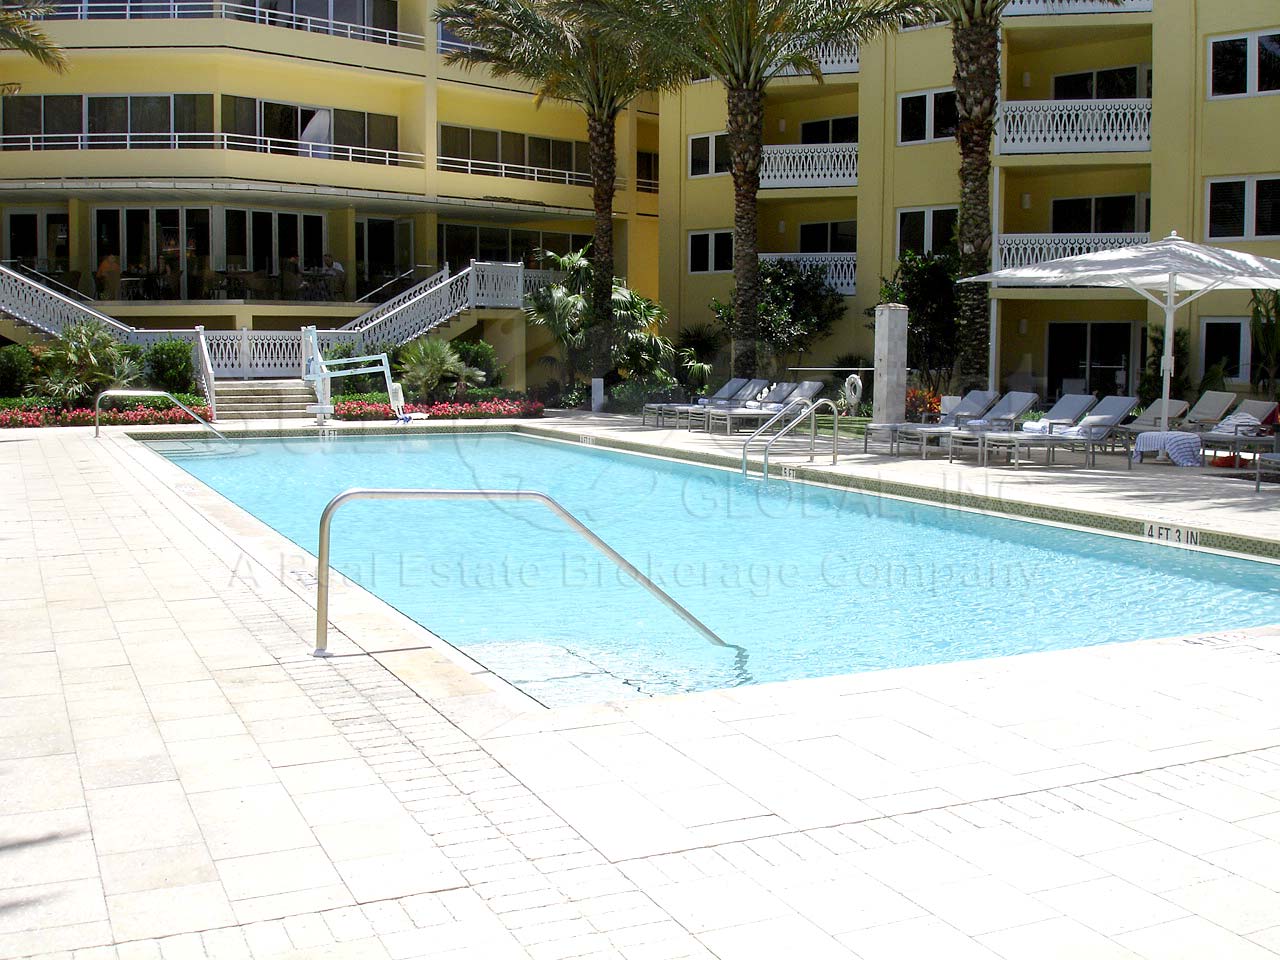 MOORINGS Edgewater Hotel Pool